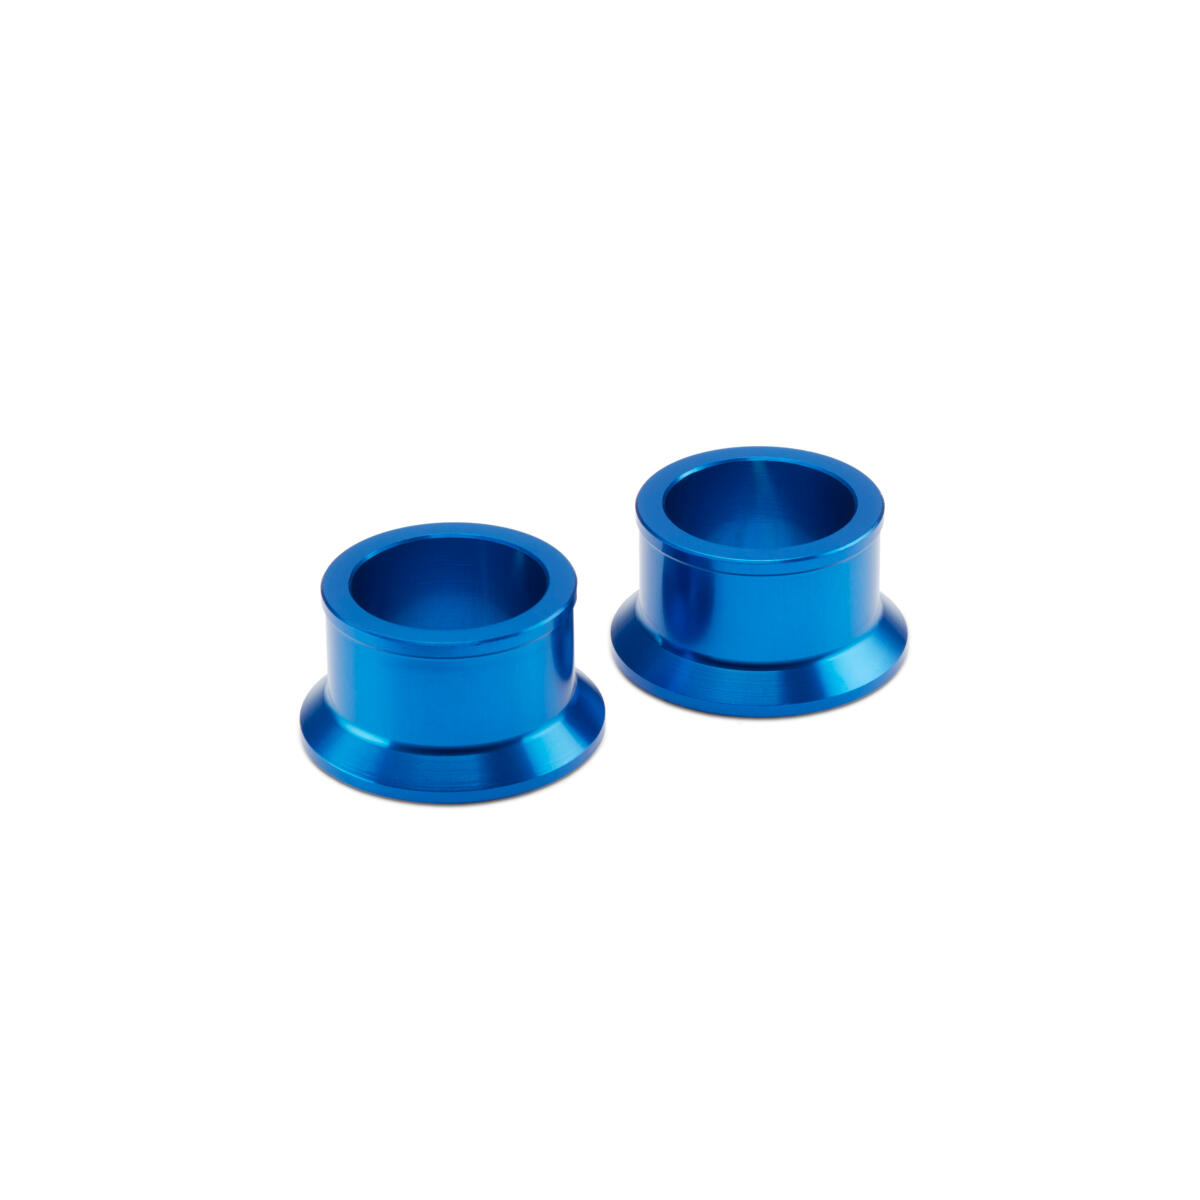 Осигурете изглед и функция Factory Racing чрез тези 25 mm задни сини дистанционни втулки.